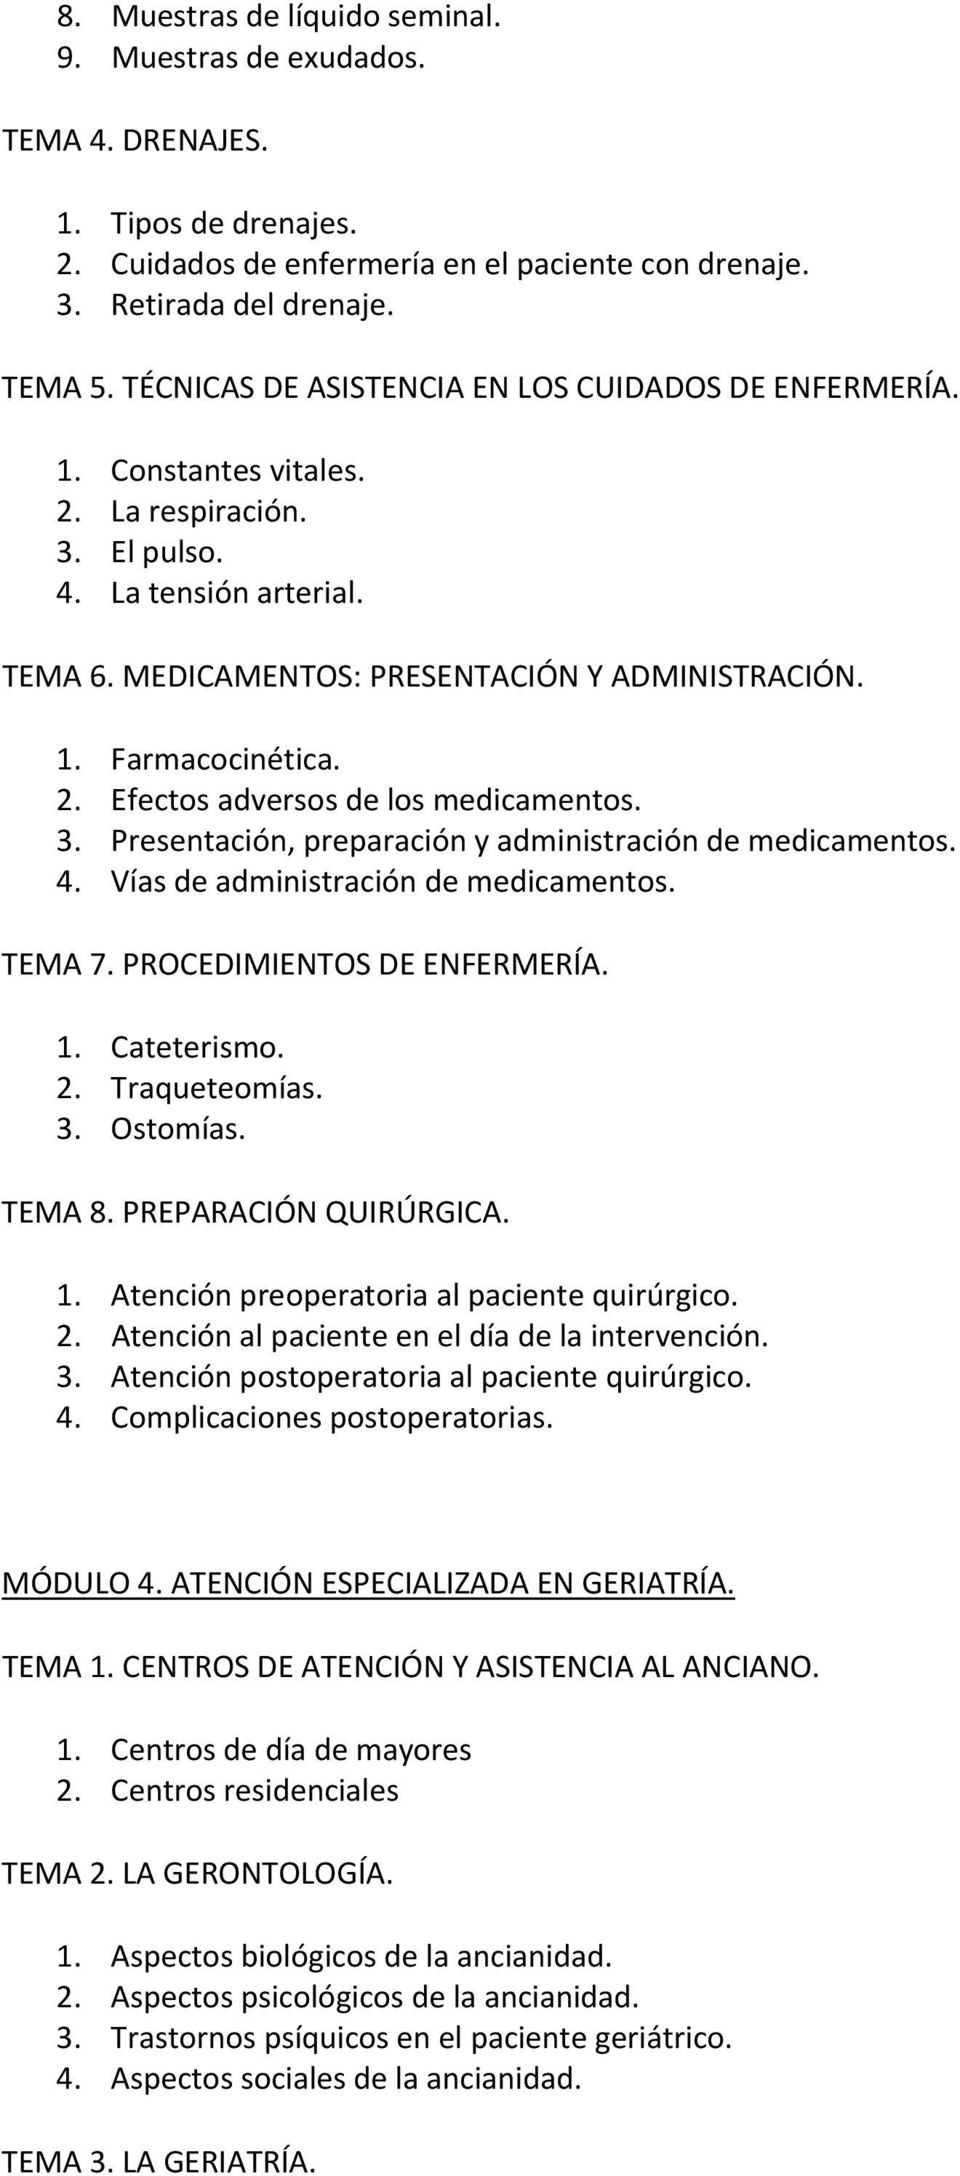 2. Efectos adversos de los medicamentos. 3. Presentación, preparación y administración de medicamentos. 4. Vías de administración de medicamentos. TEMA 7. PROCEDIMIENTOS DE ENFERMERÍA. 1. Cateterismo.